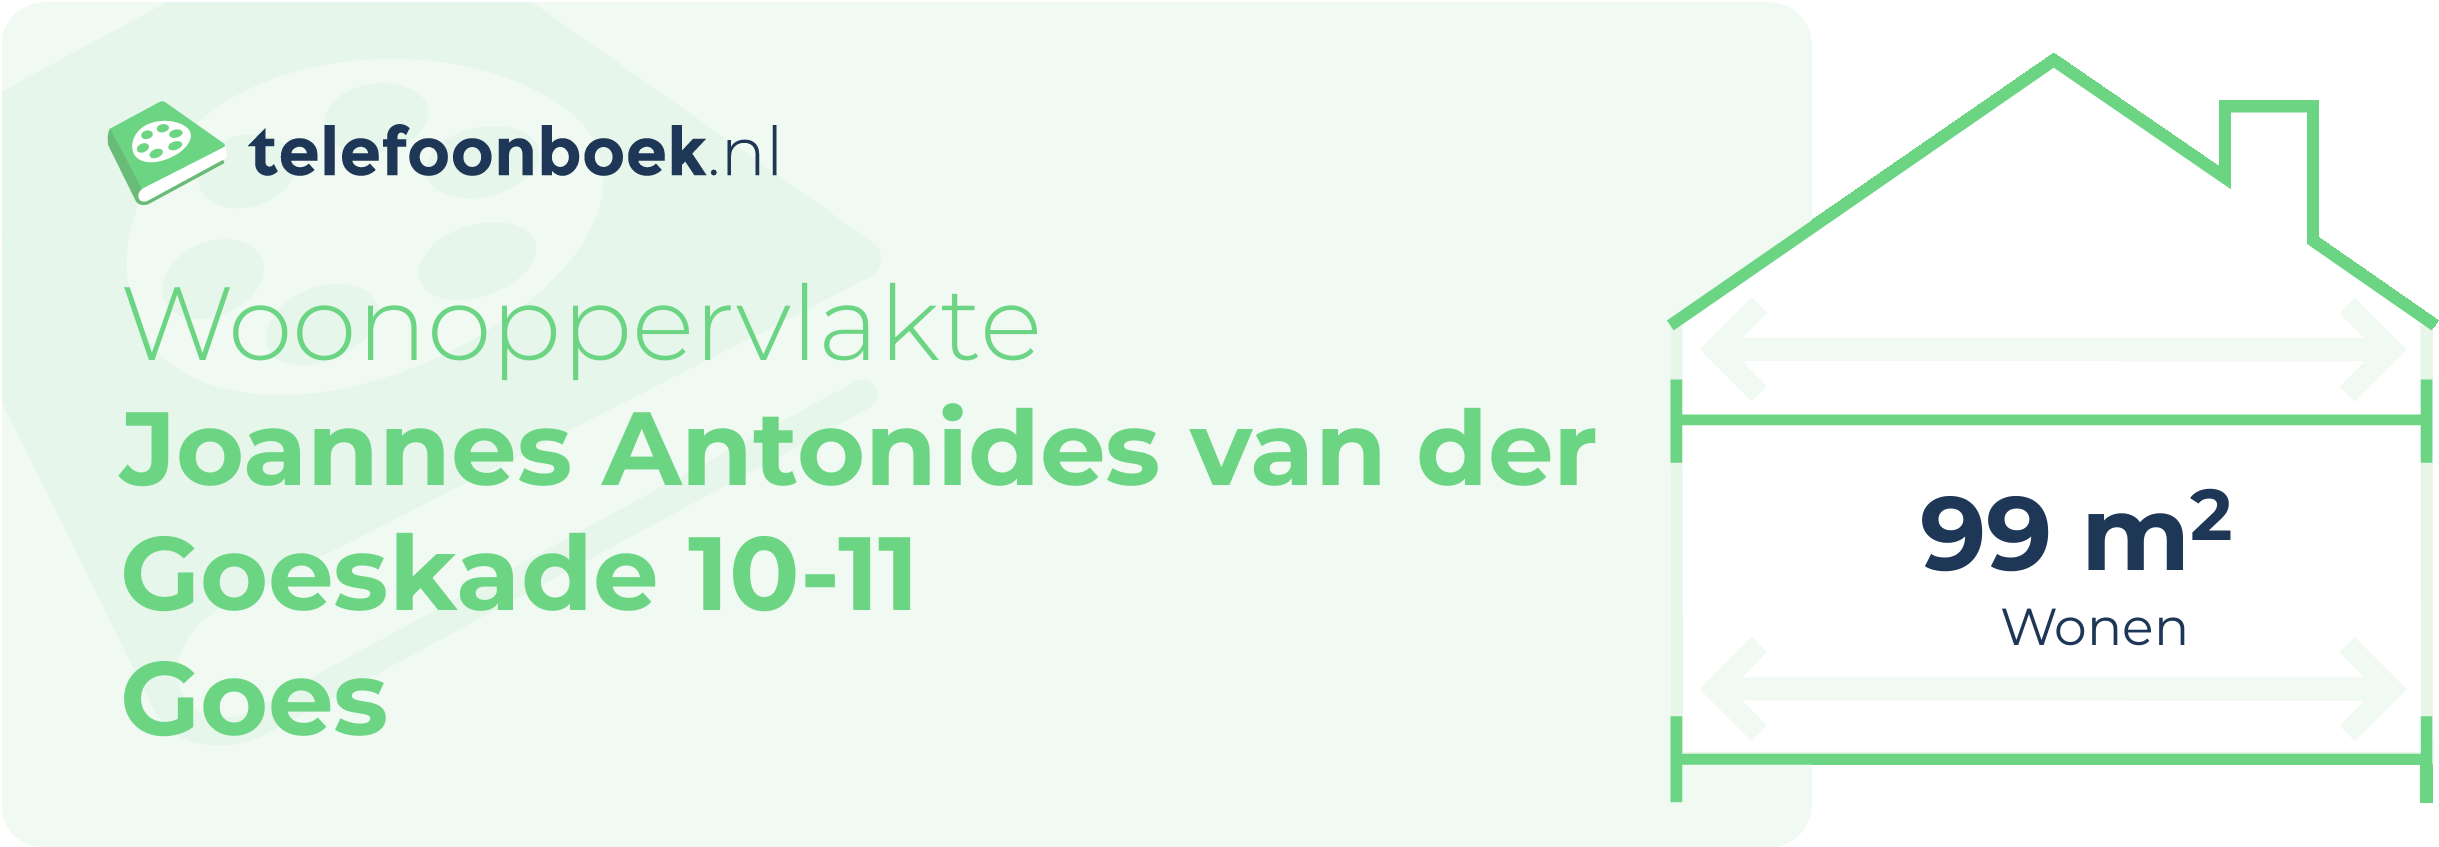 Woonoppervlakte Joannes Antonides Van Der Goeskade 10-11 Goes